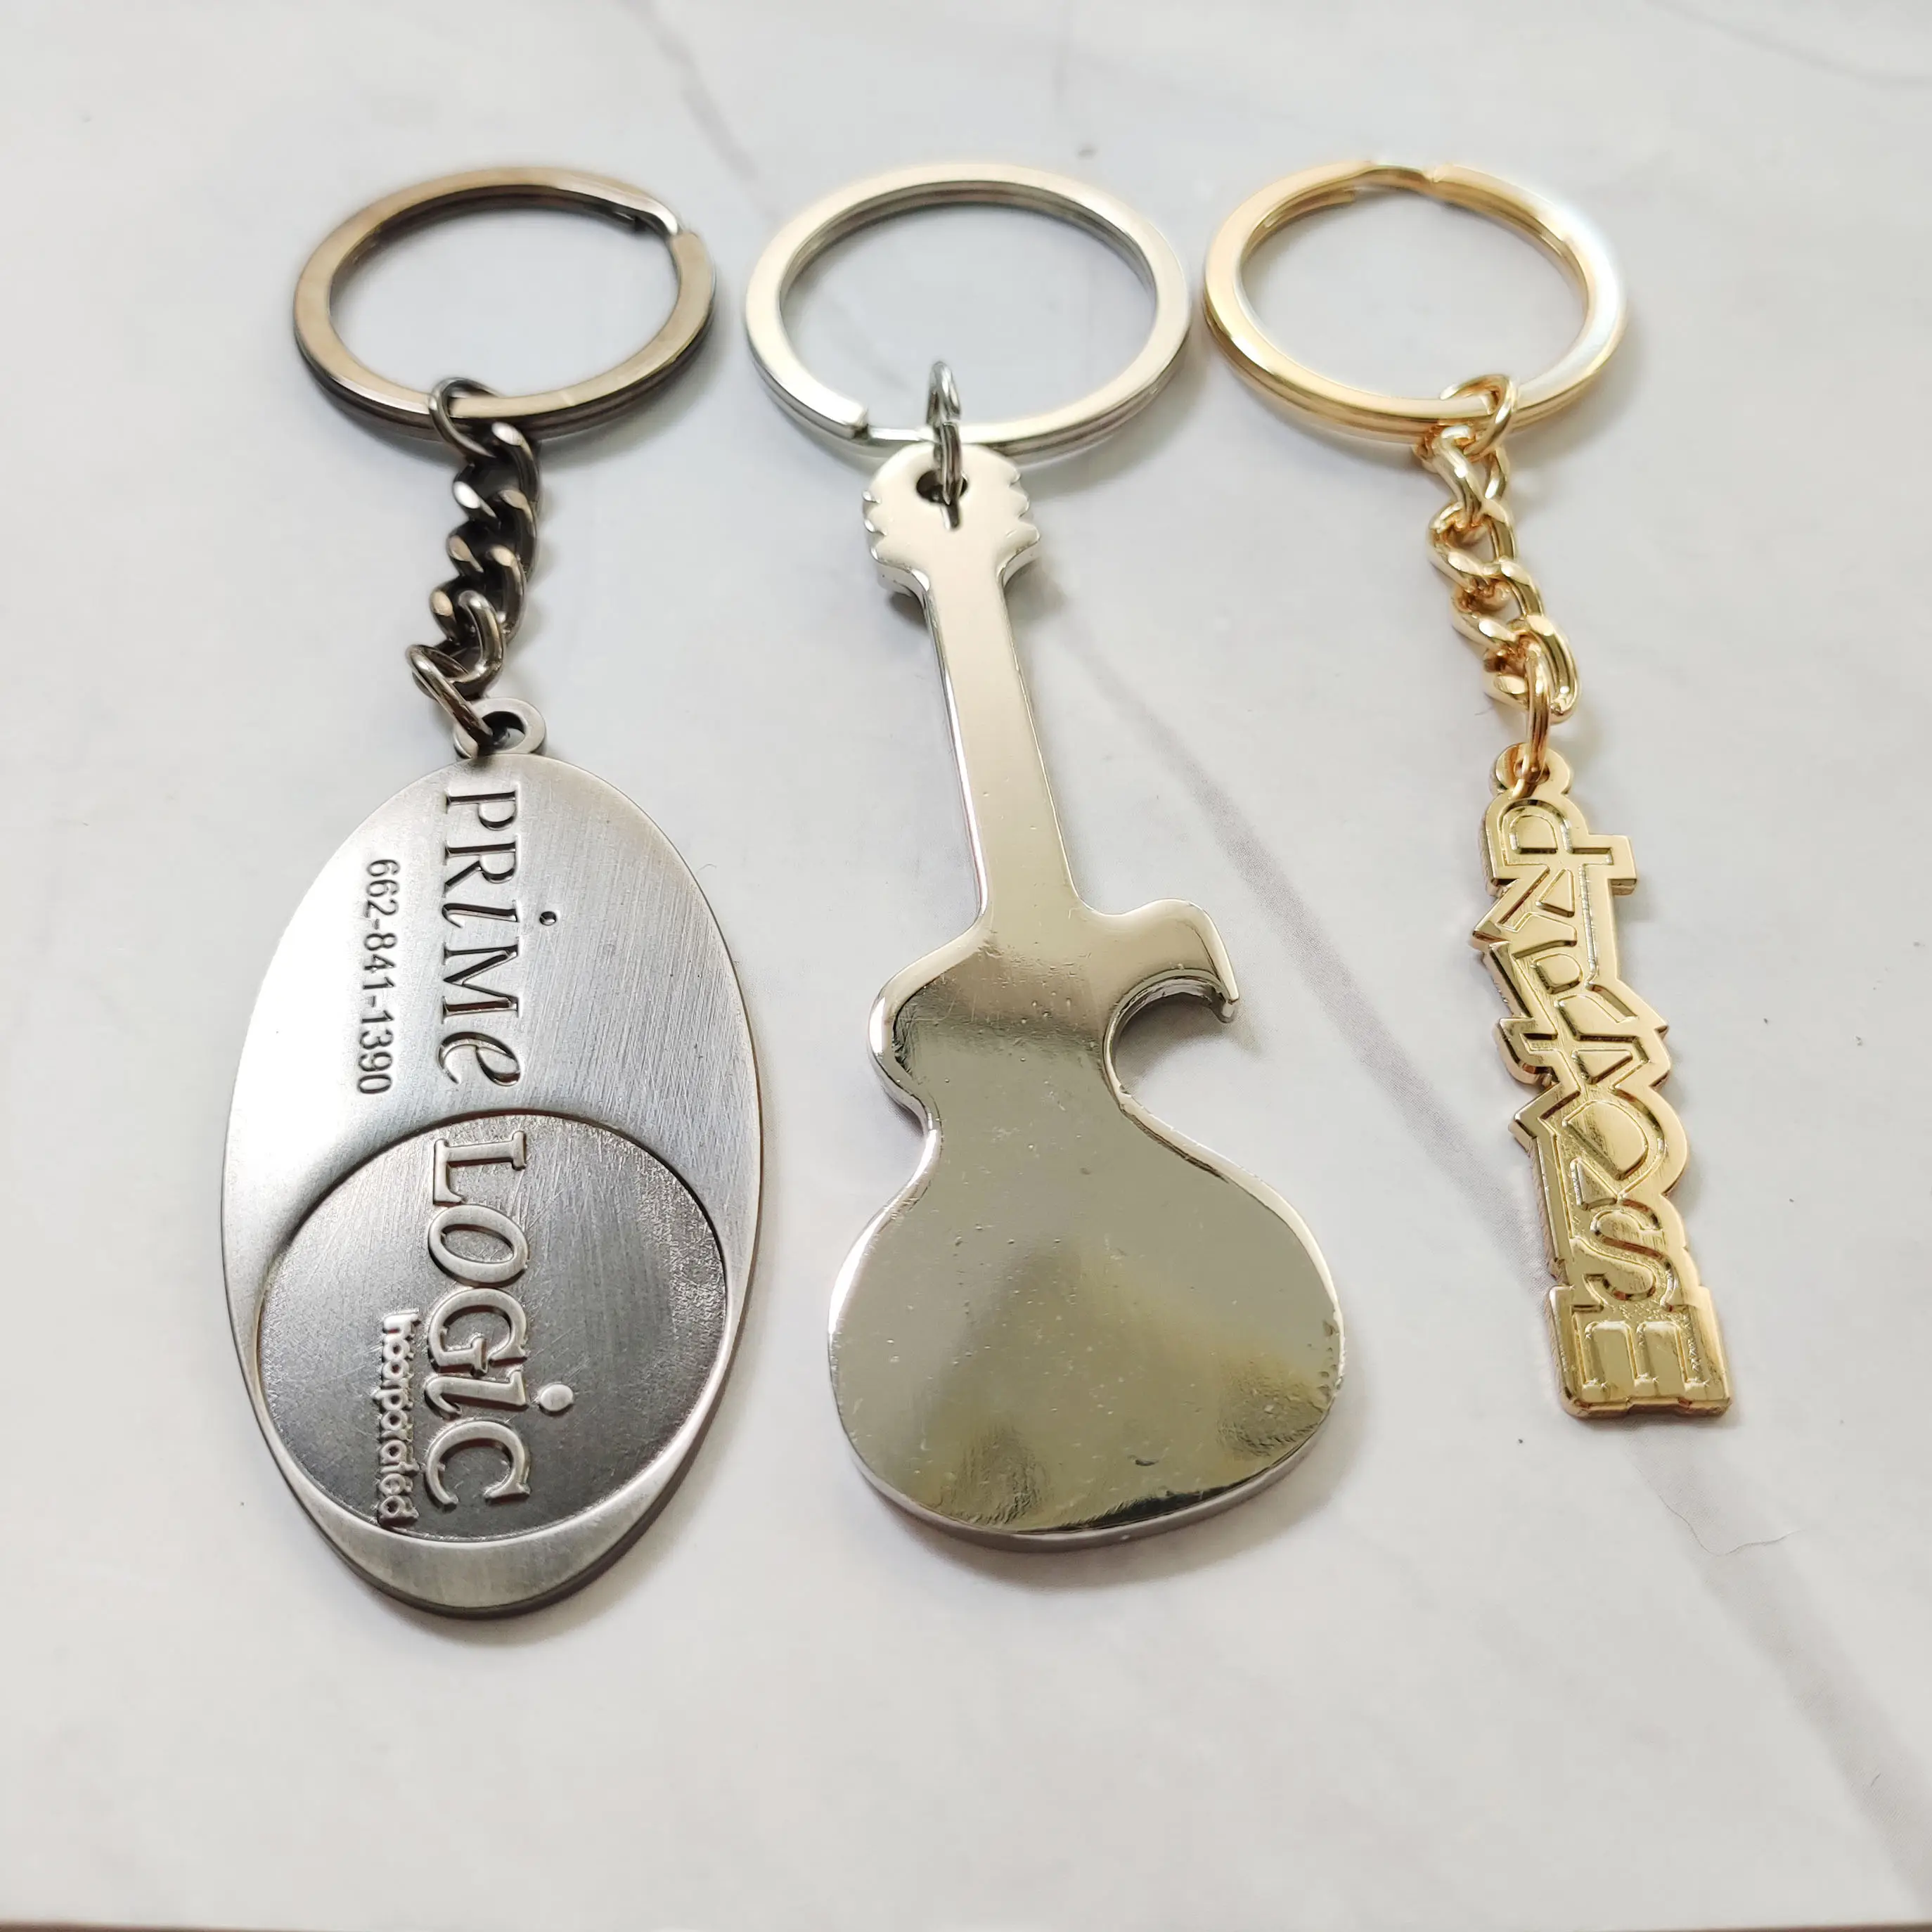 Porte-clés en métal dur souple avec design personnalisé Porte-clés en fer émaillé personnalisé